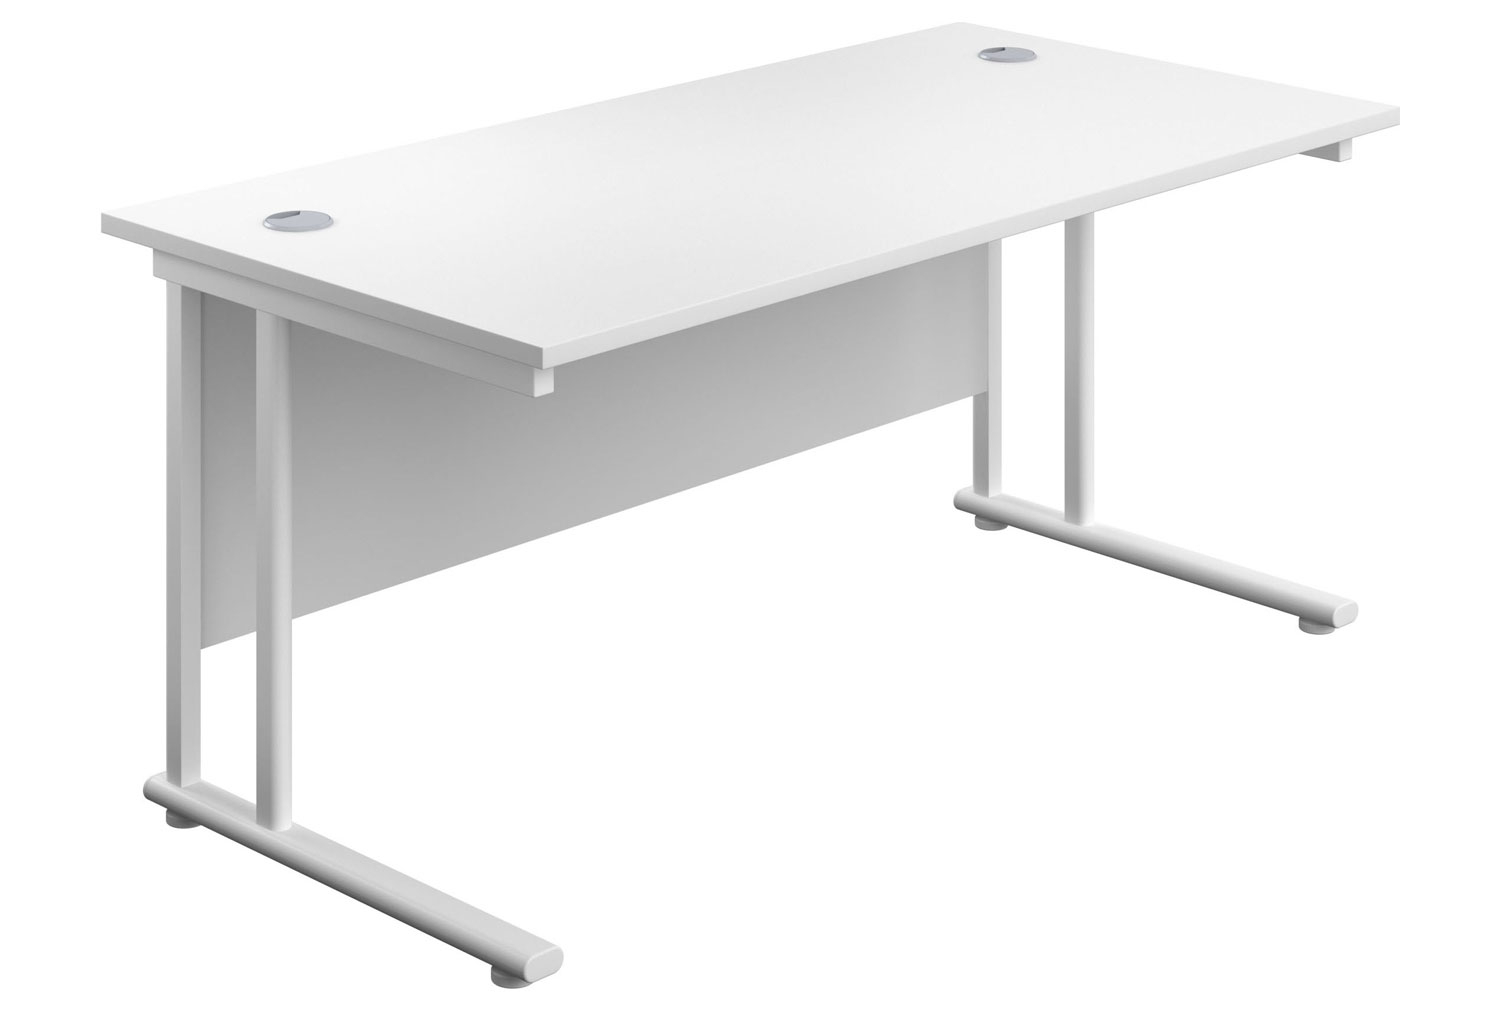 Impulse Rectangular Office Desk, 180wx80dx73h (cm), White Frame, White